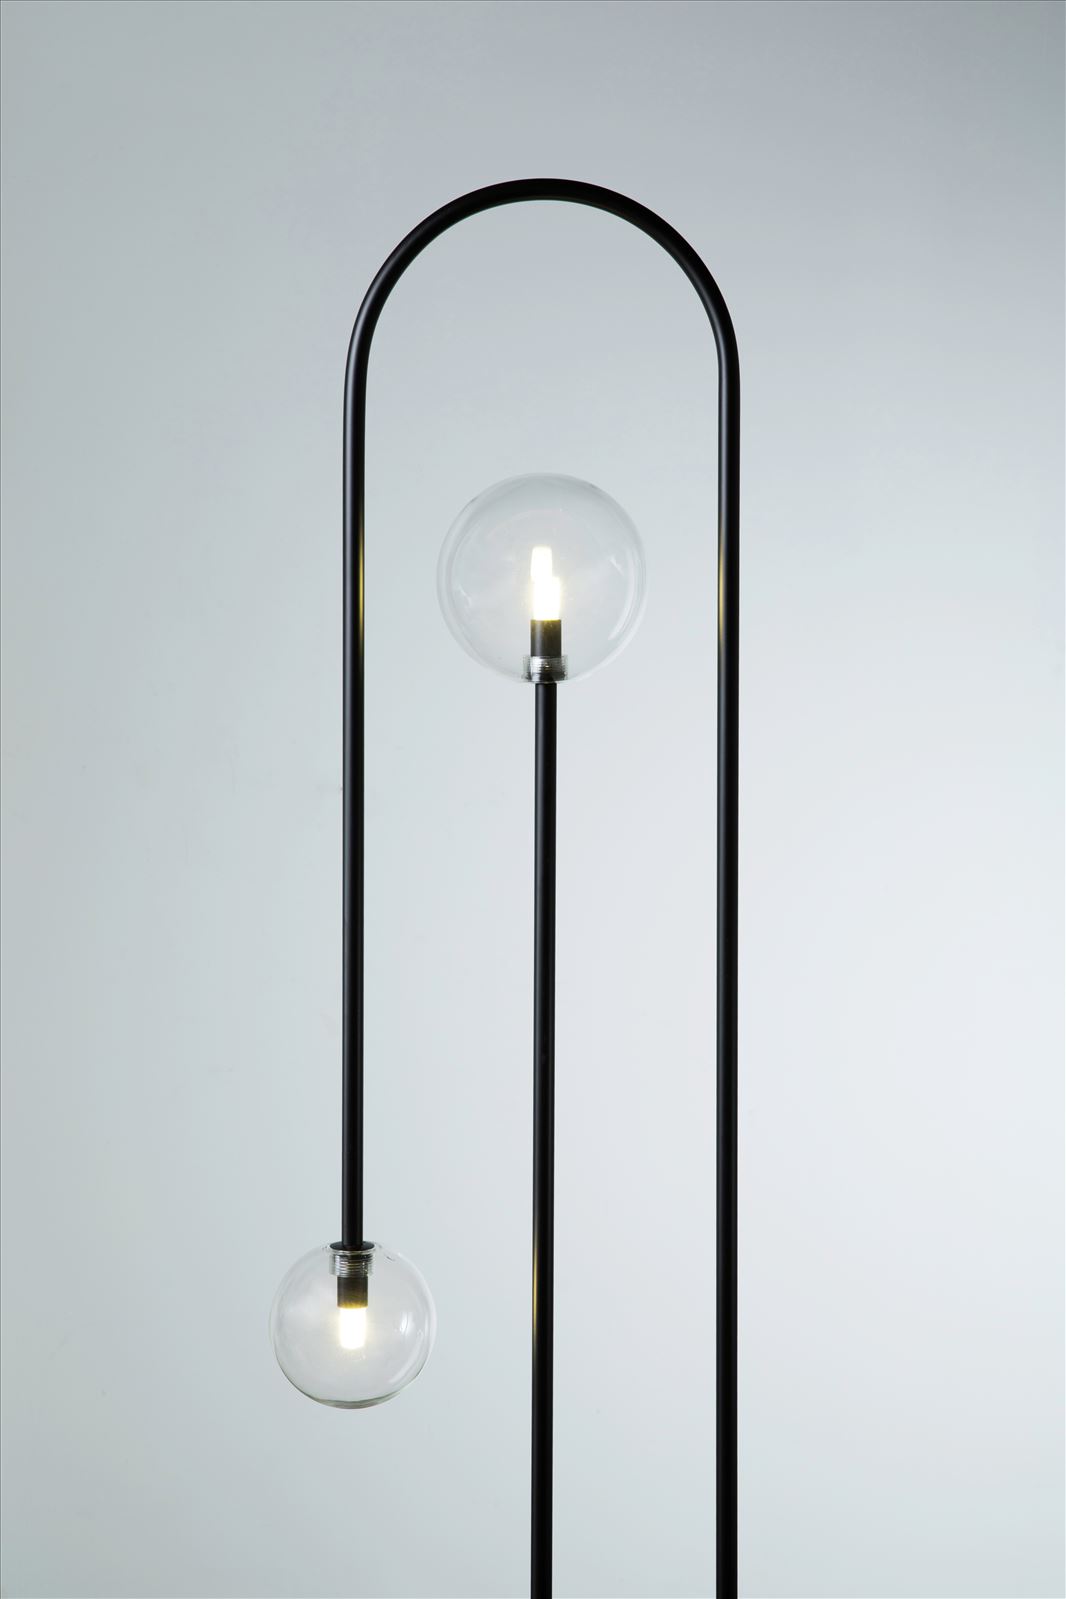 גופי תאורה מקטגוריית: מנורות עמידה  ,שם המוצר: